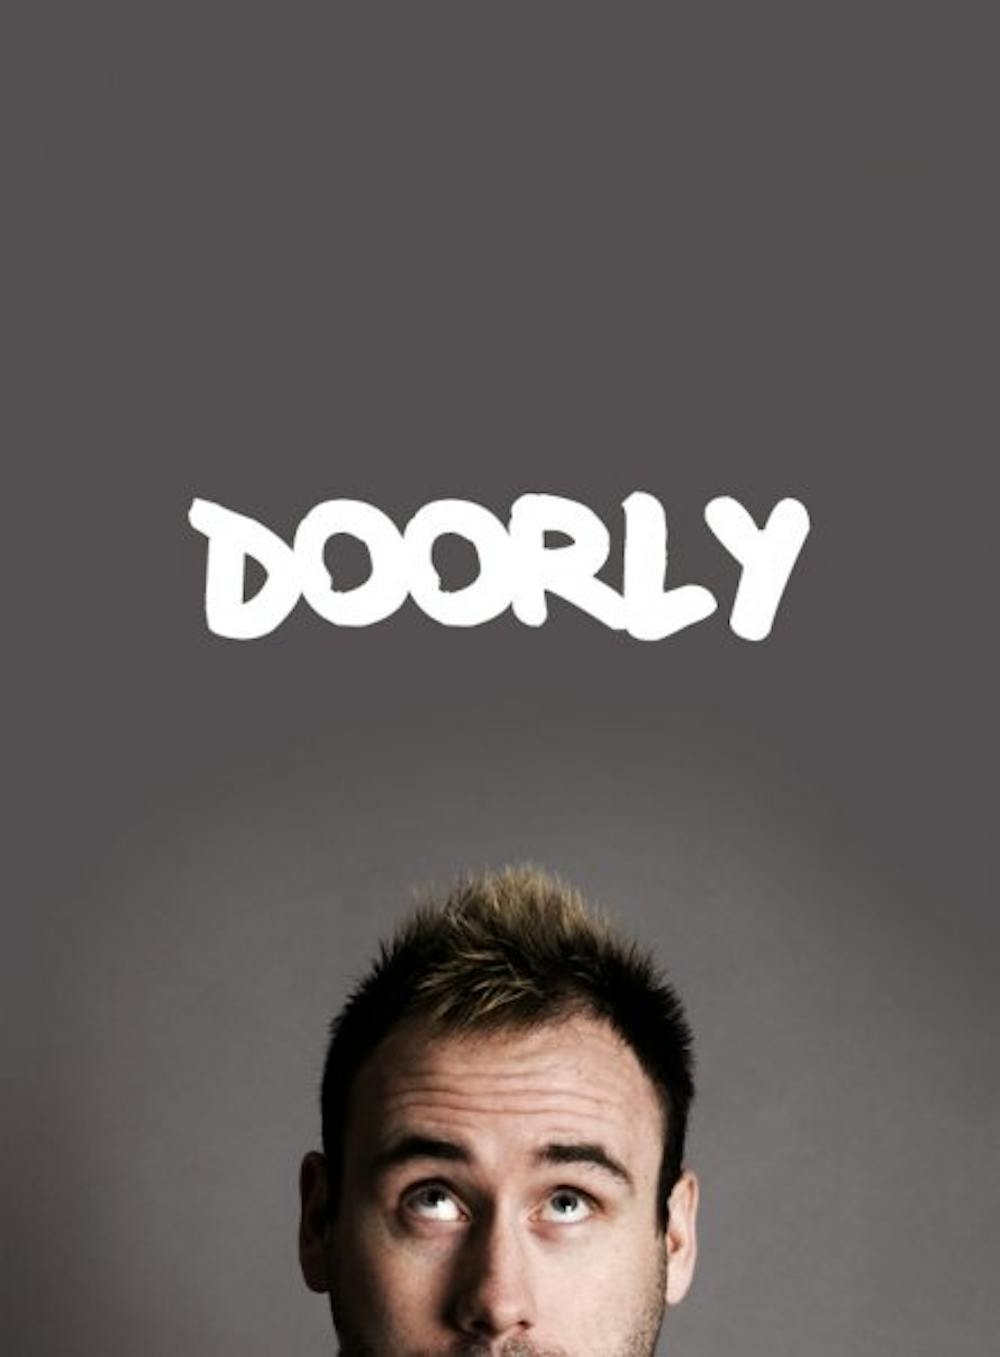 Doorly